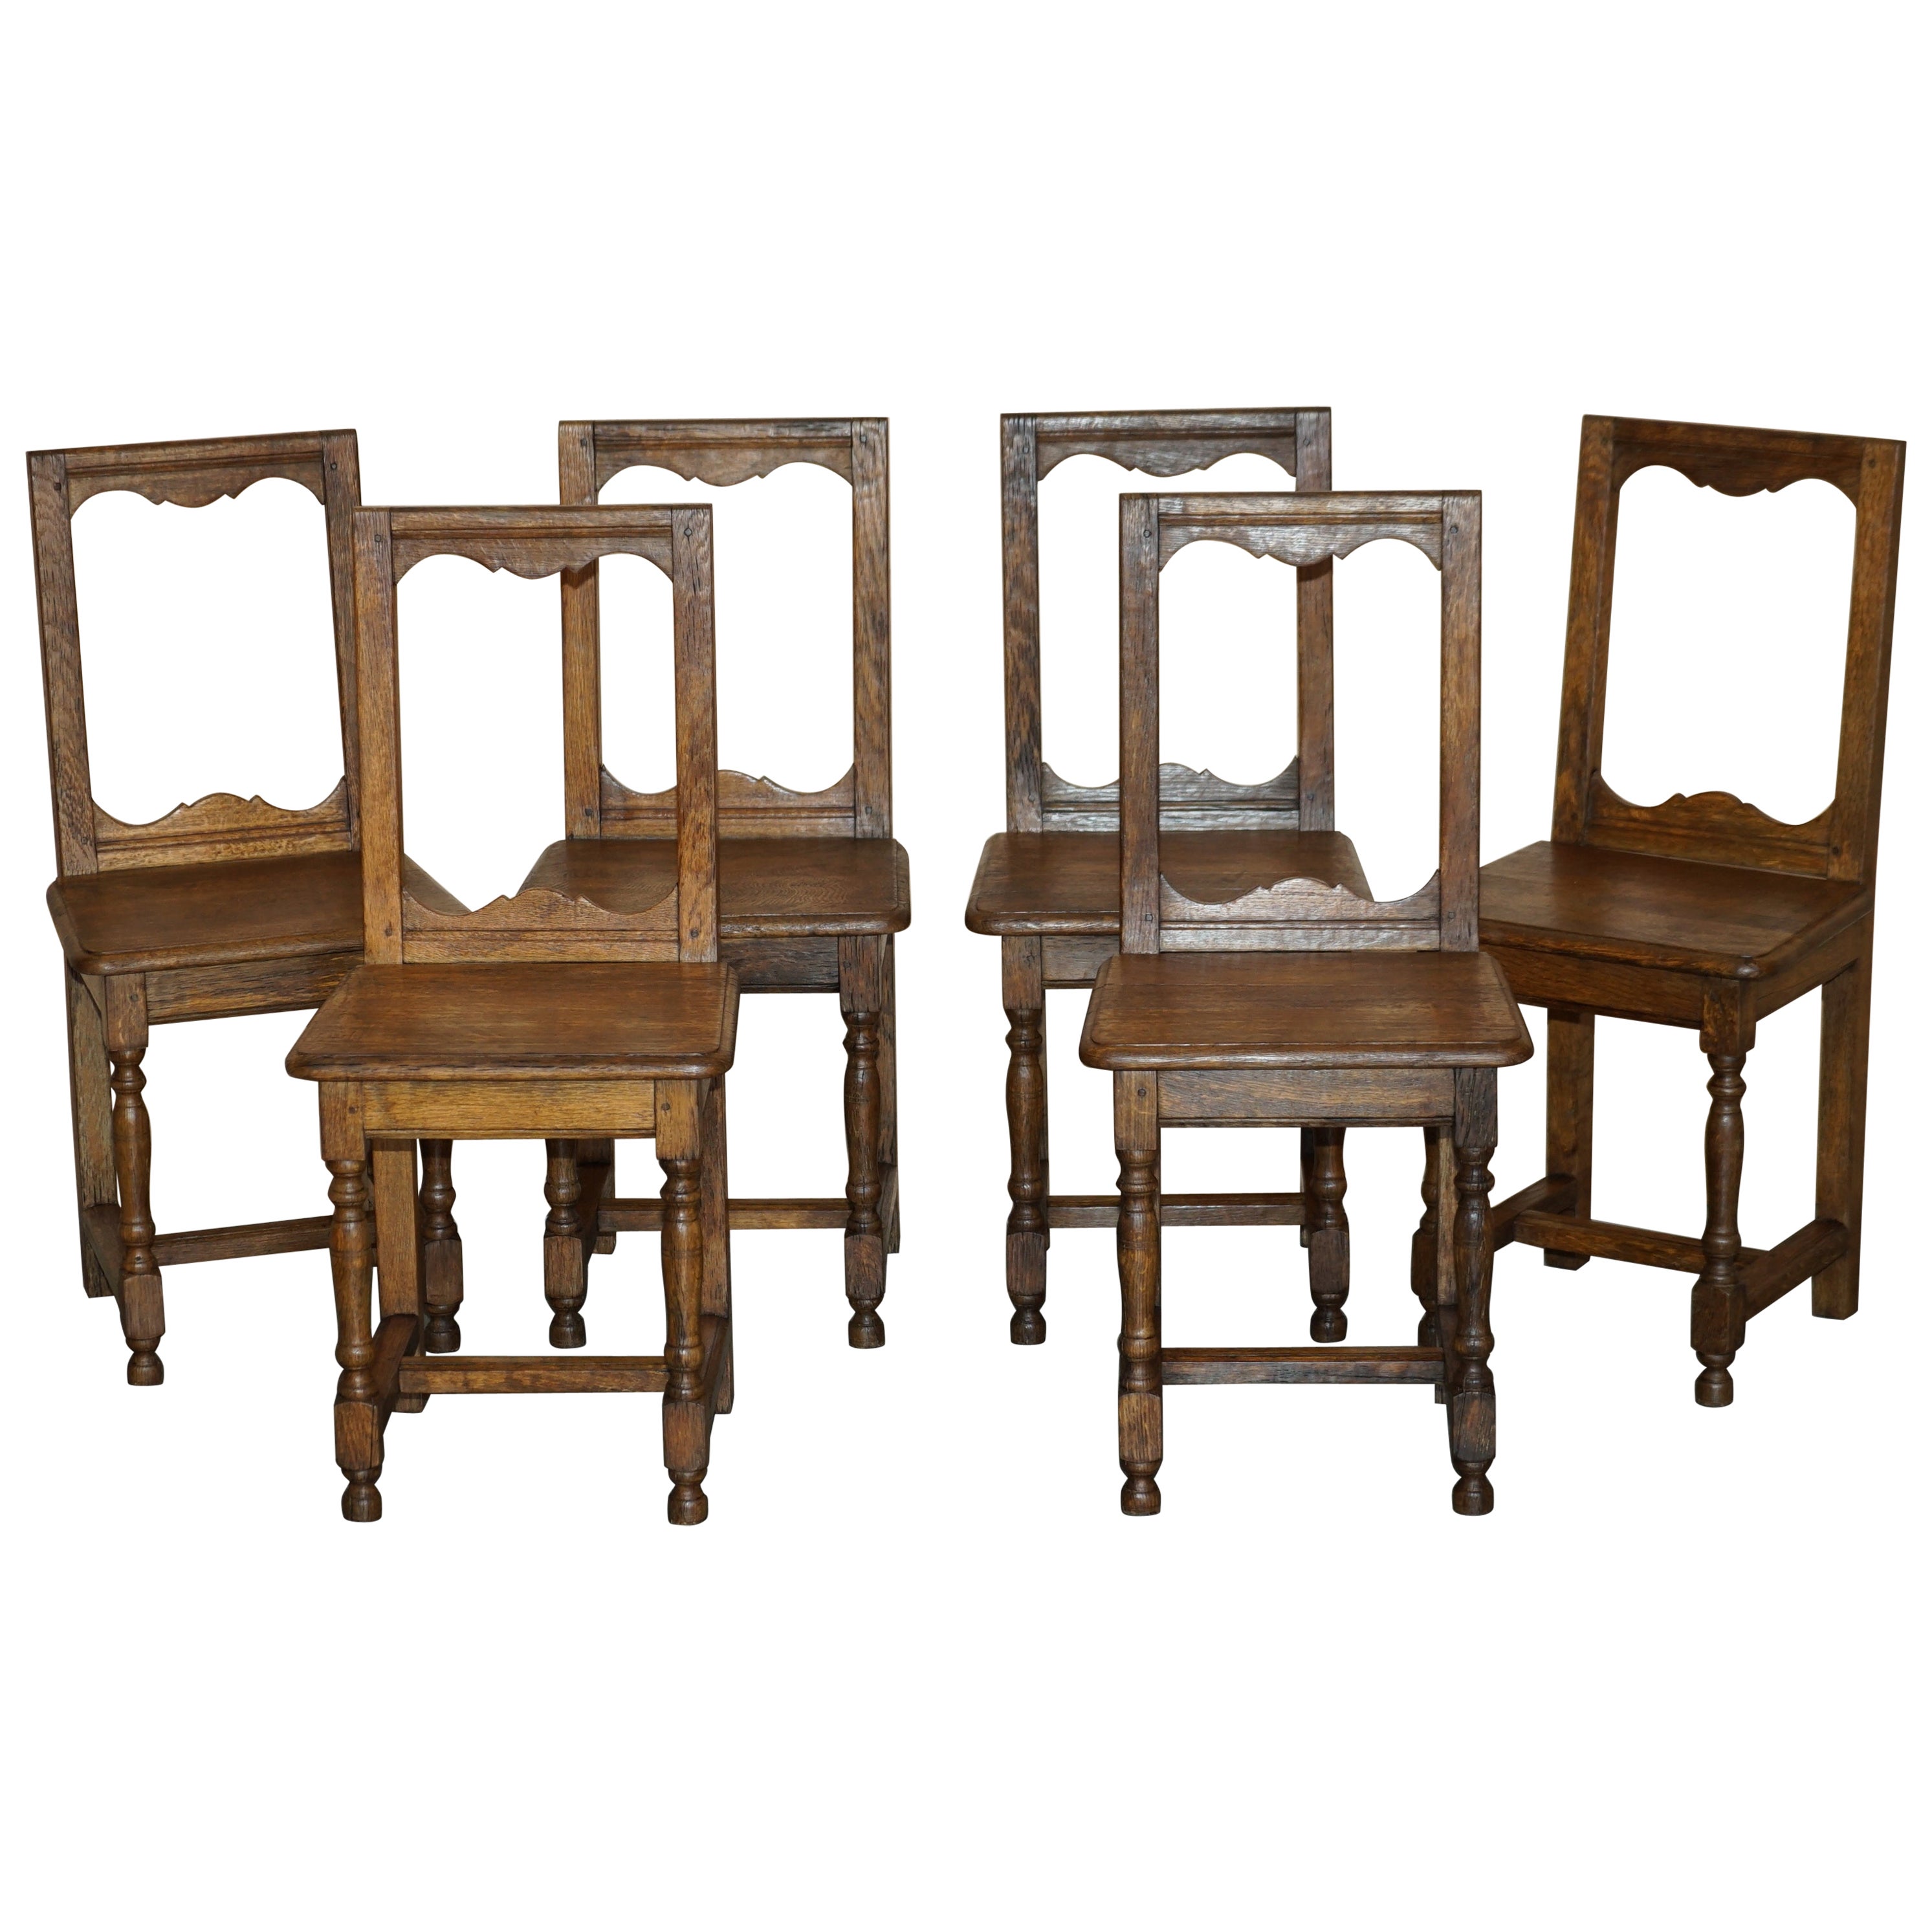 Suite aus sechs antiken viktorianischen englischen Chapel-Esszimmerstühlen aus Eiche, atemberaubendes Holz